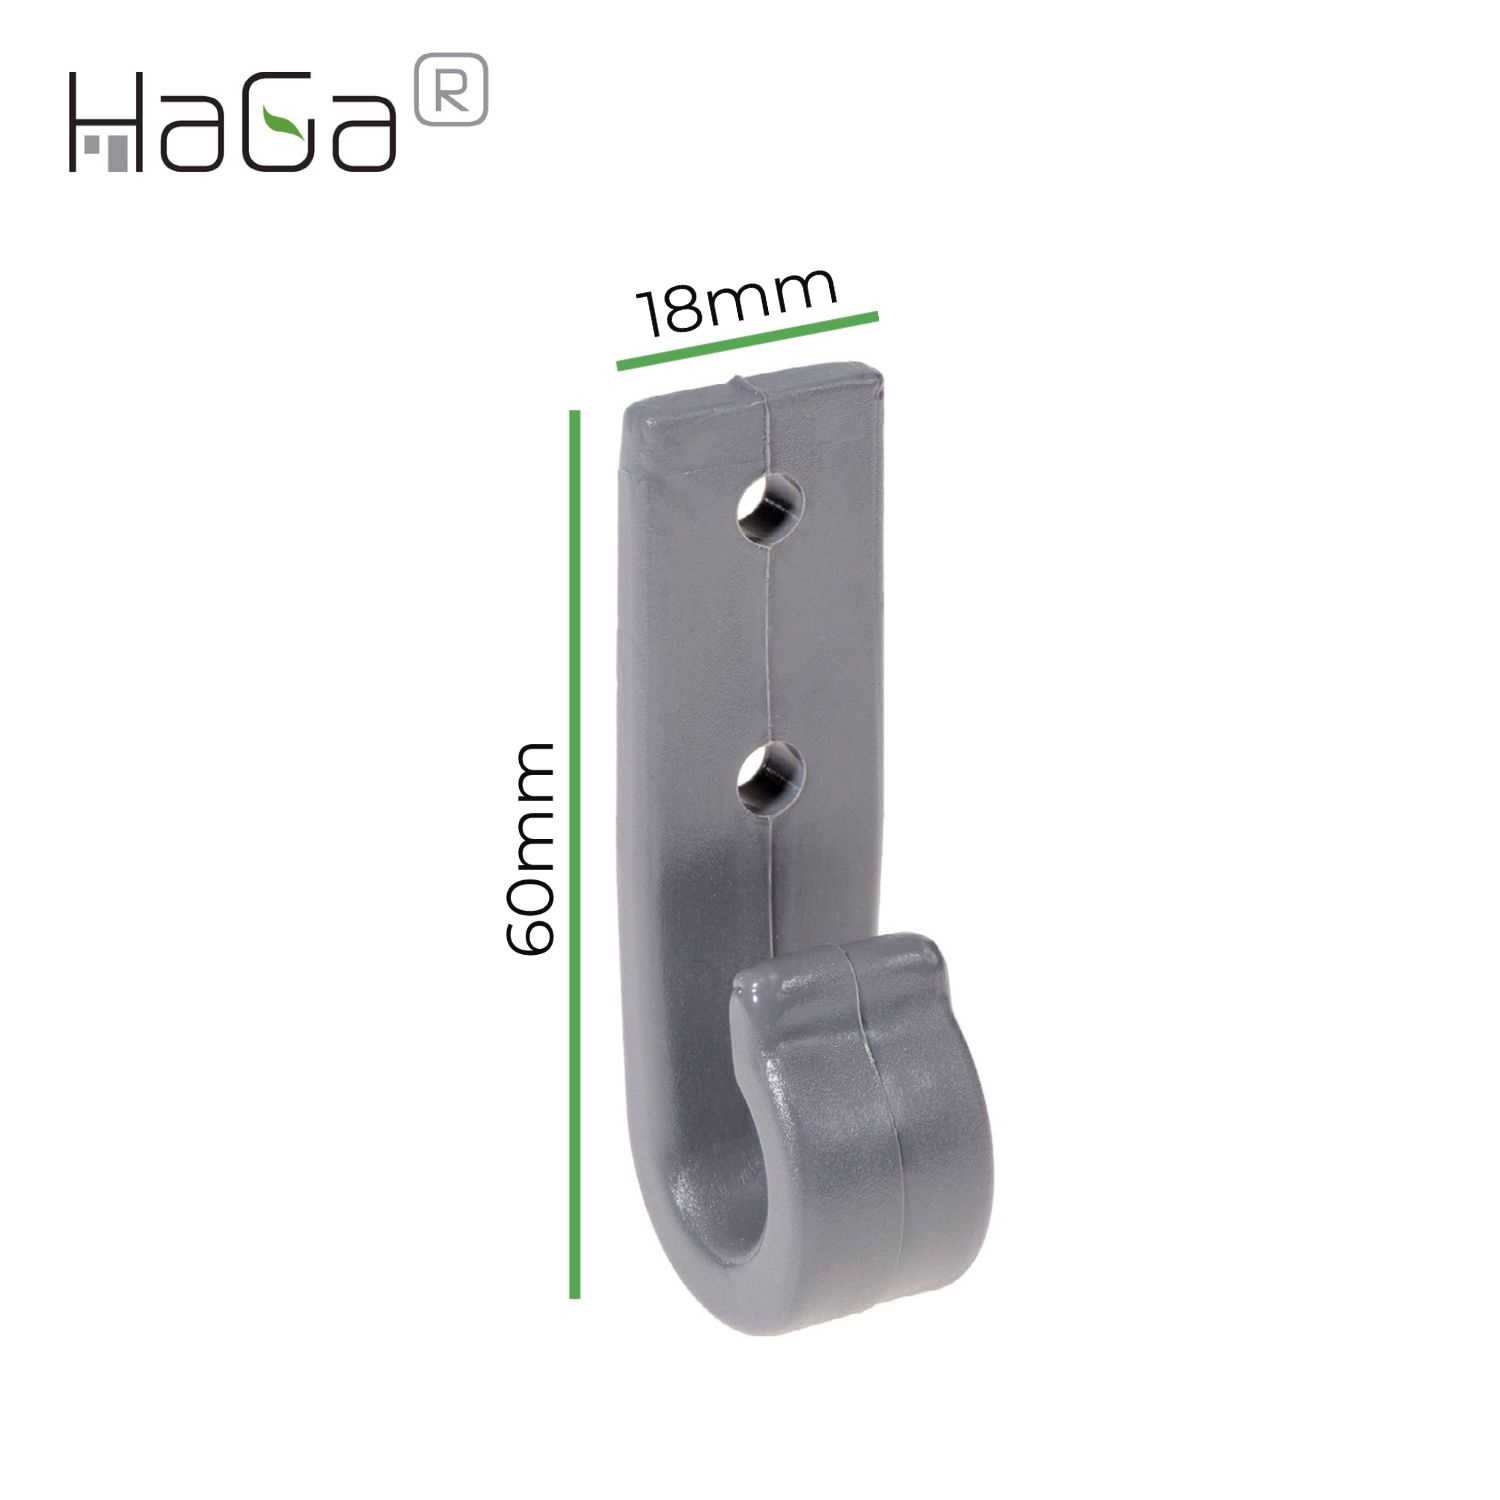 Crochet de bâche Crochet à deux trous pour fermeture centrifuge HaGa® 60mm x 18mm 100 pièces